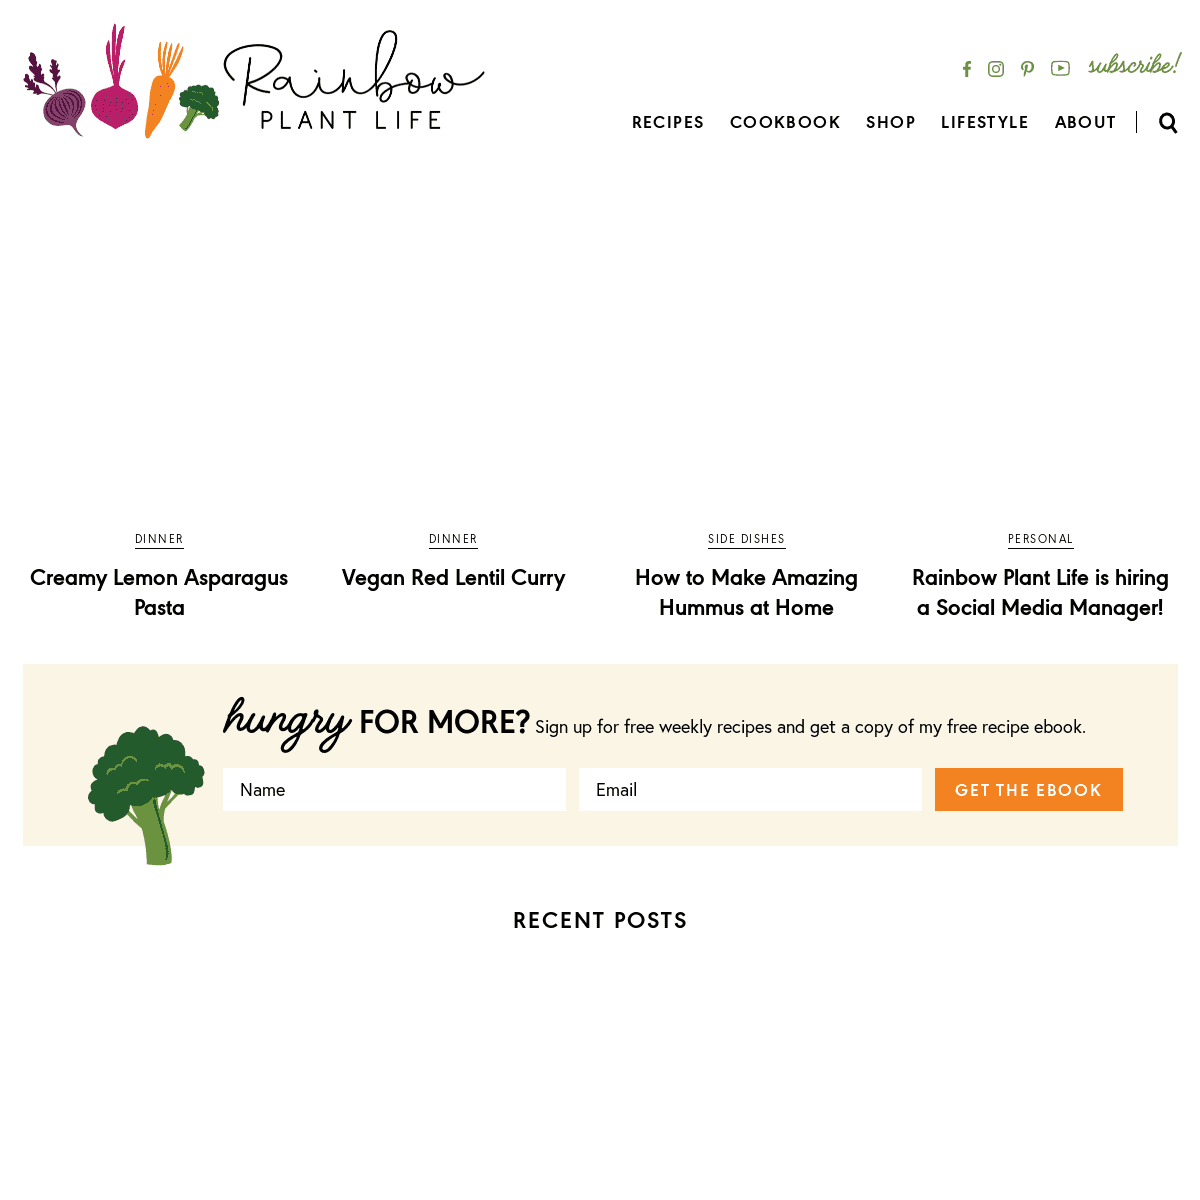 A complete backup of https://rainbowplantlife.com